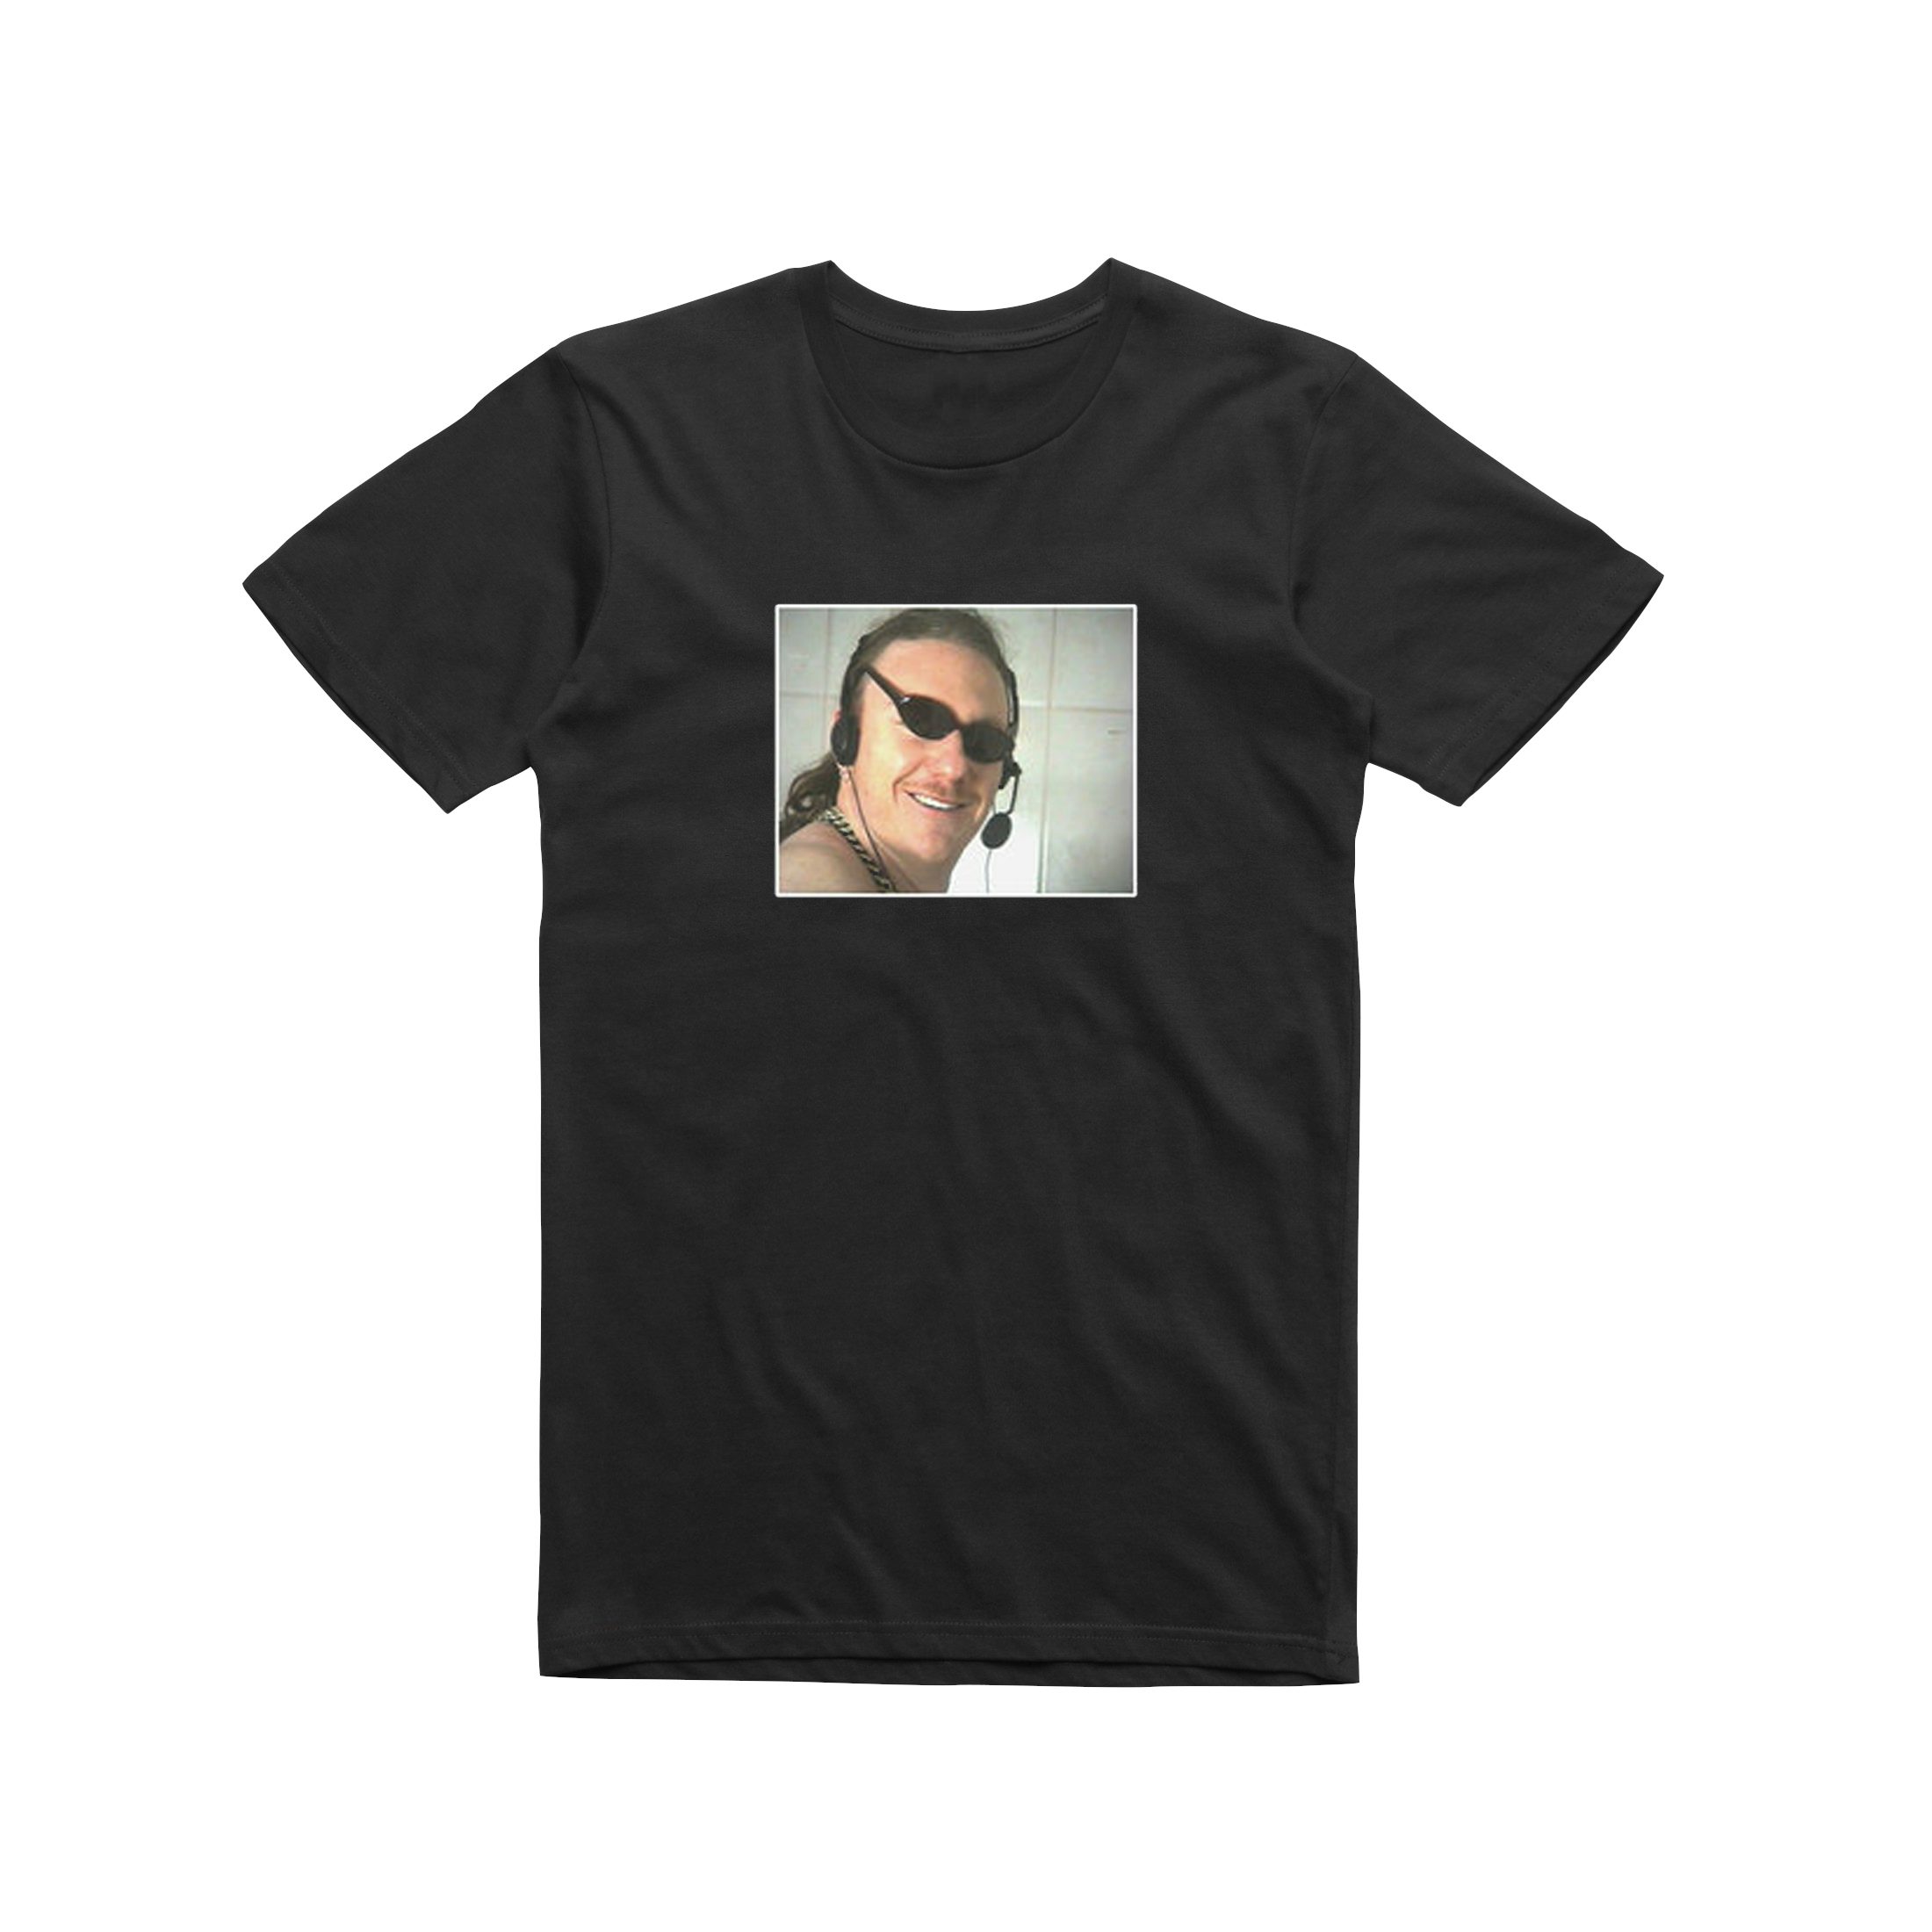 Gildan Hammer T Shirt Size Chart